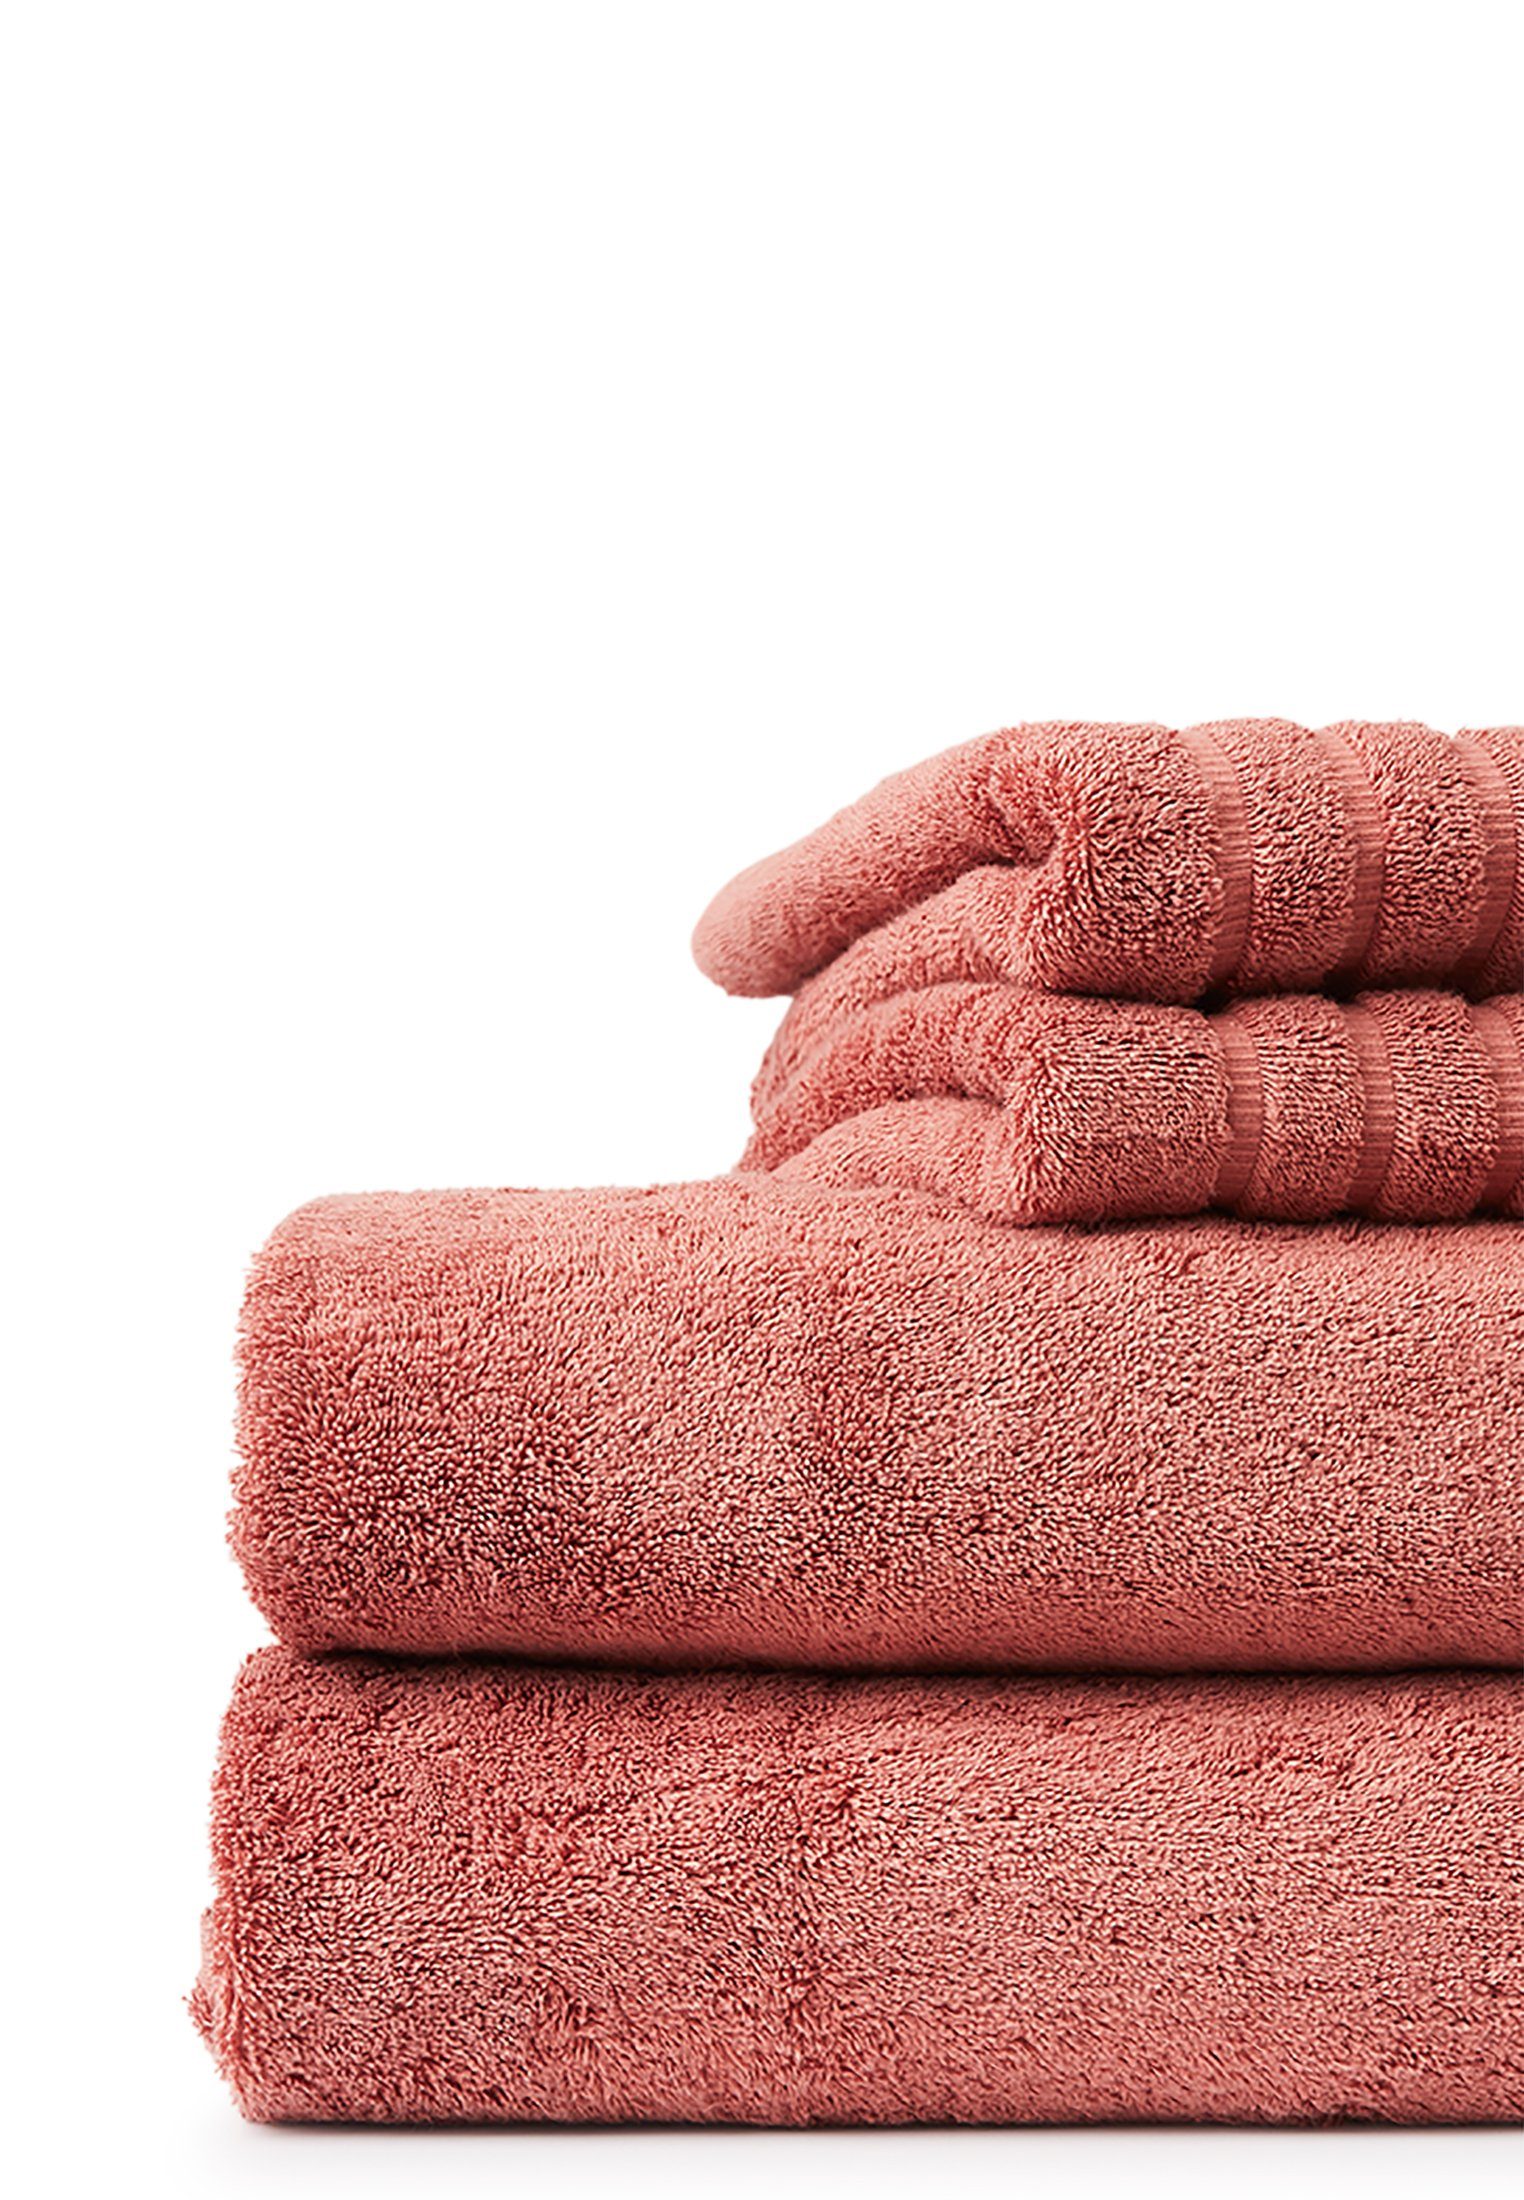 Lexington Handtuch Towel pink Original antique